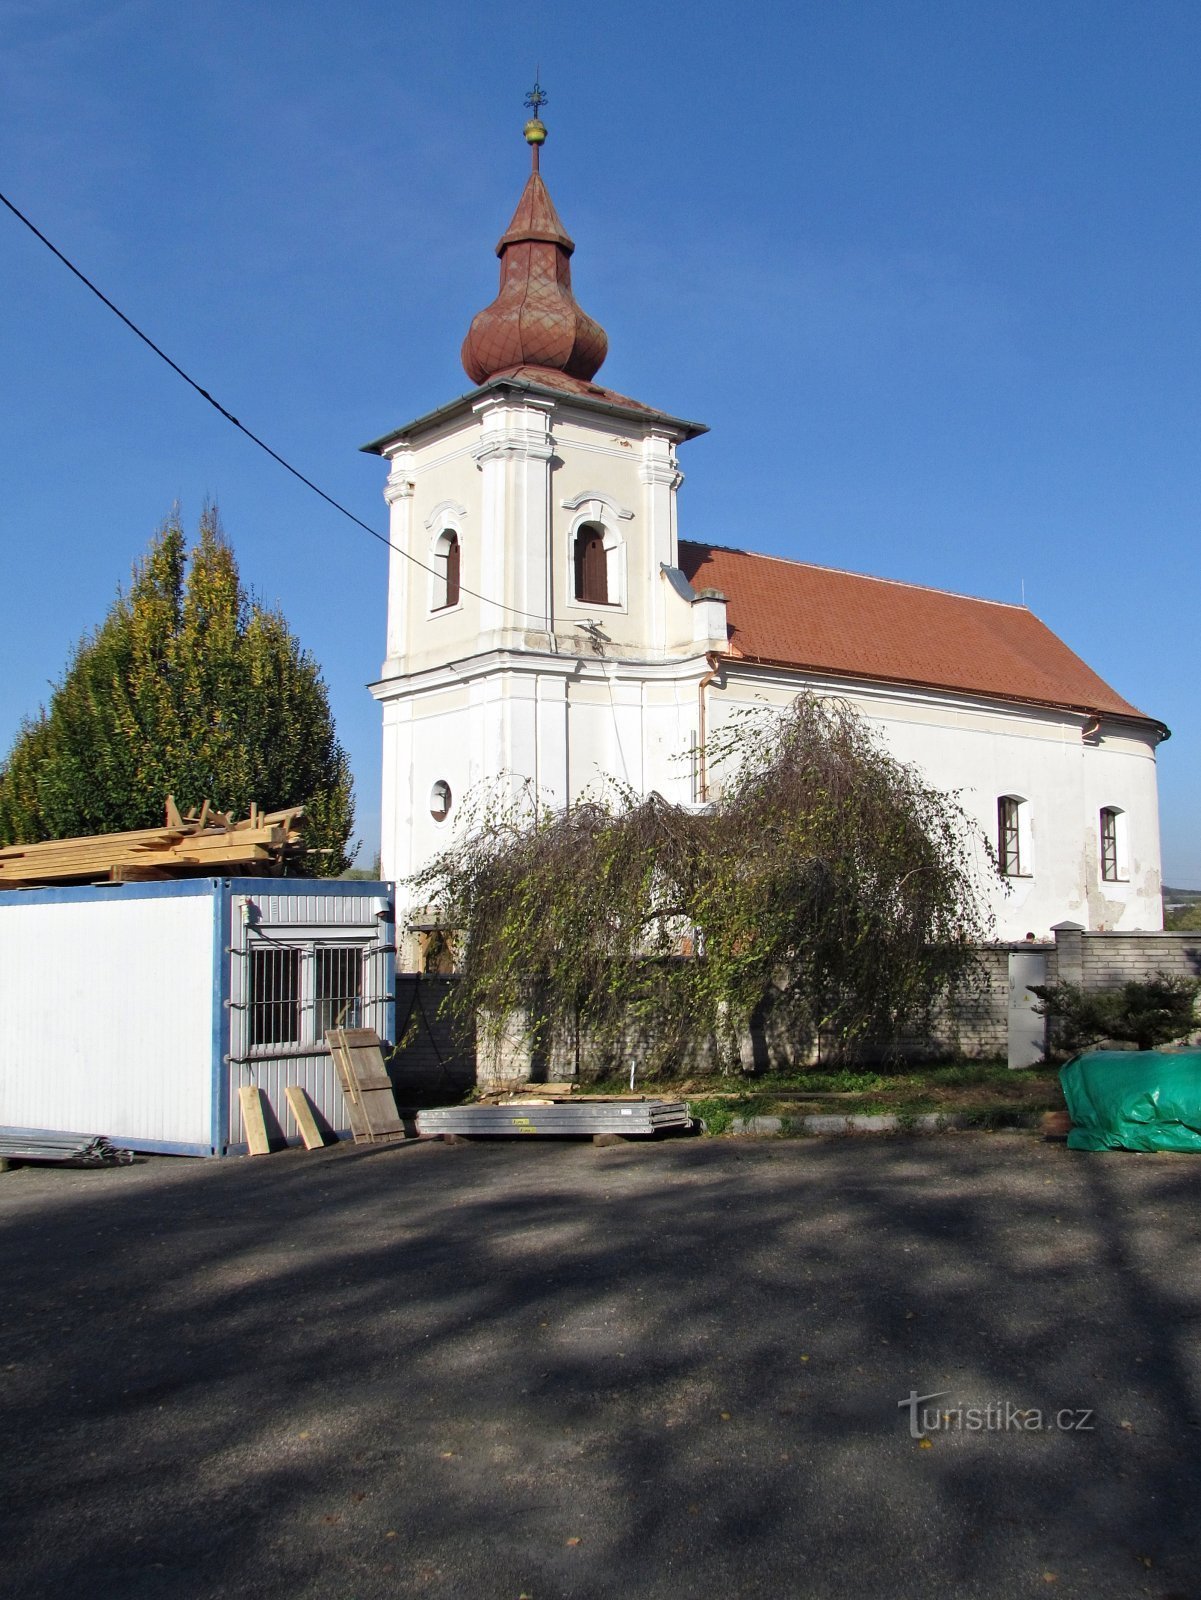 Leopoldowa - cerkiew św. Idziego